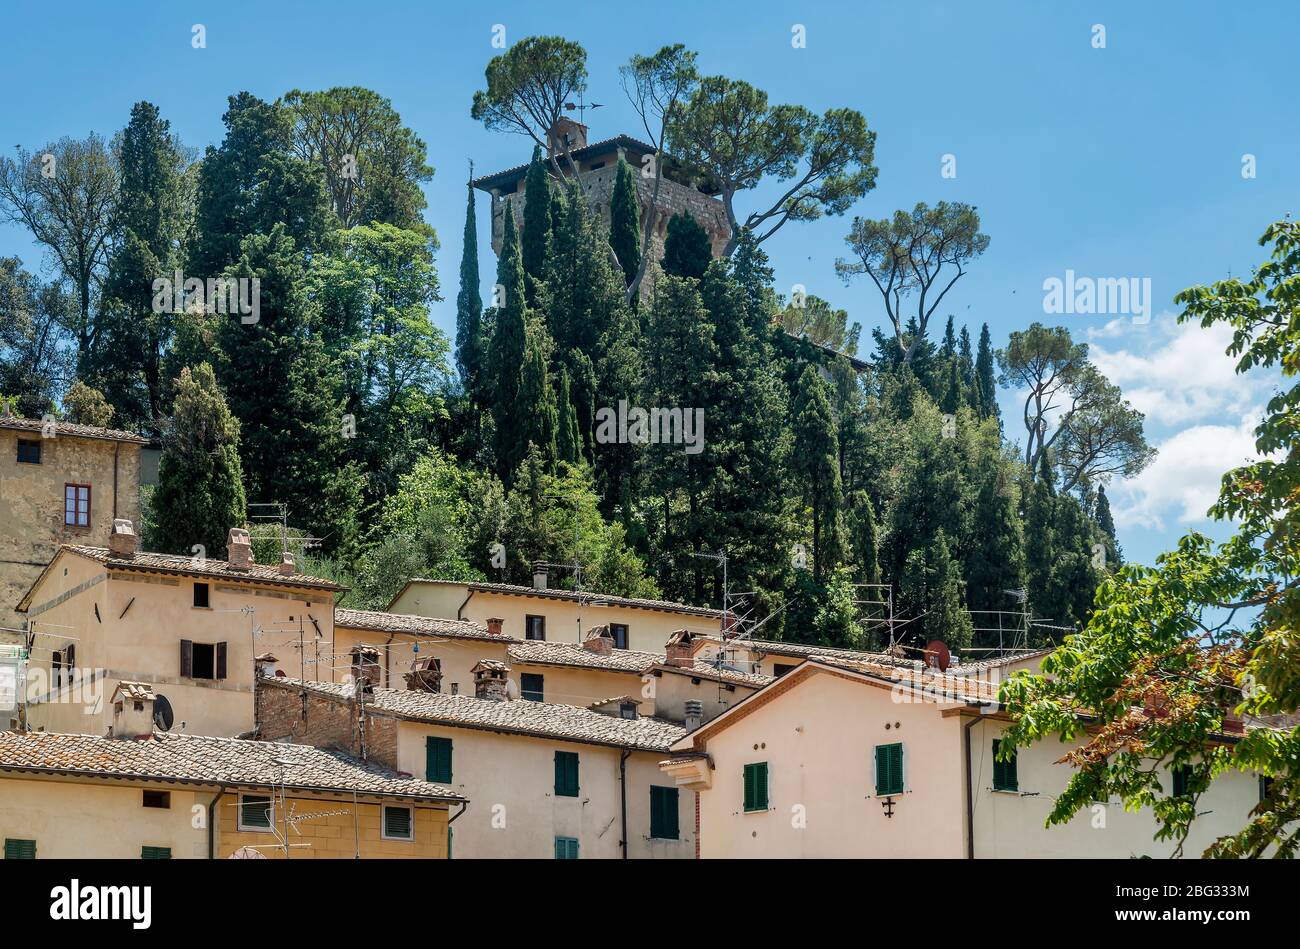 Vista sulla fortezza dell'antico borgo collinare di Cetona, Siena, Italia, in una giornata di sole Foto Stock